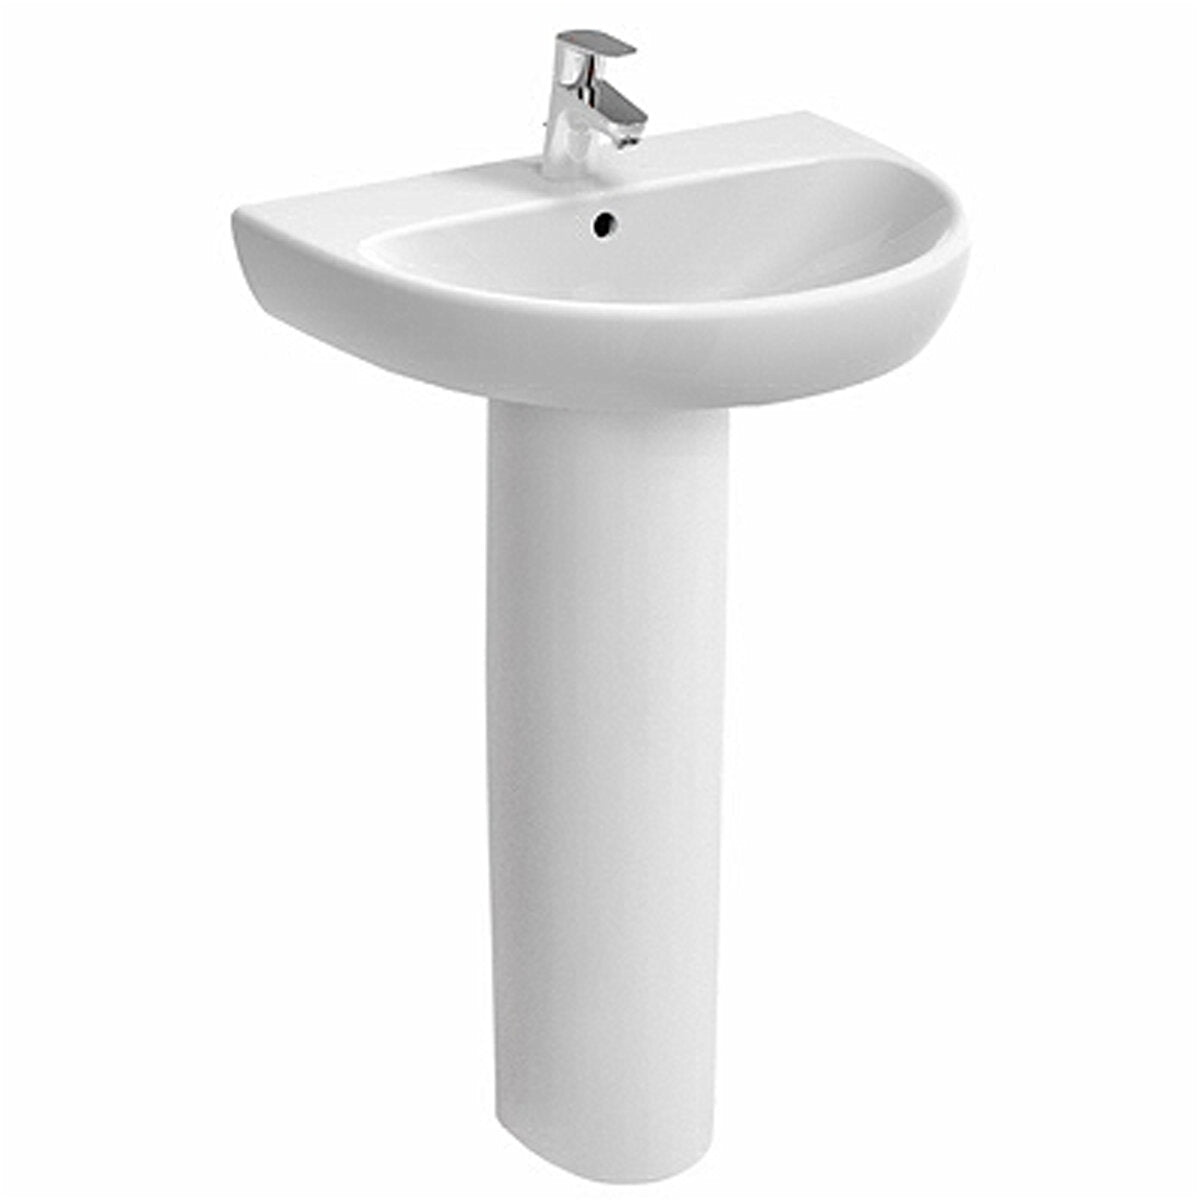 Column for Pozzi-Ginori Selnova Pro washbasin in glossy white